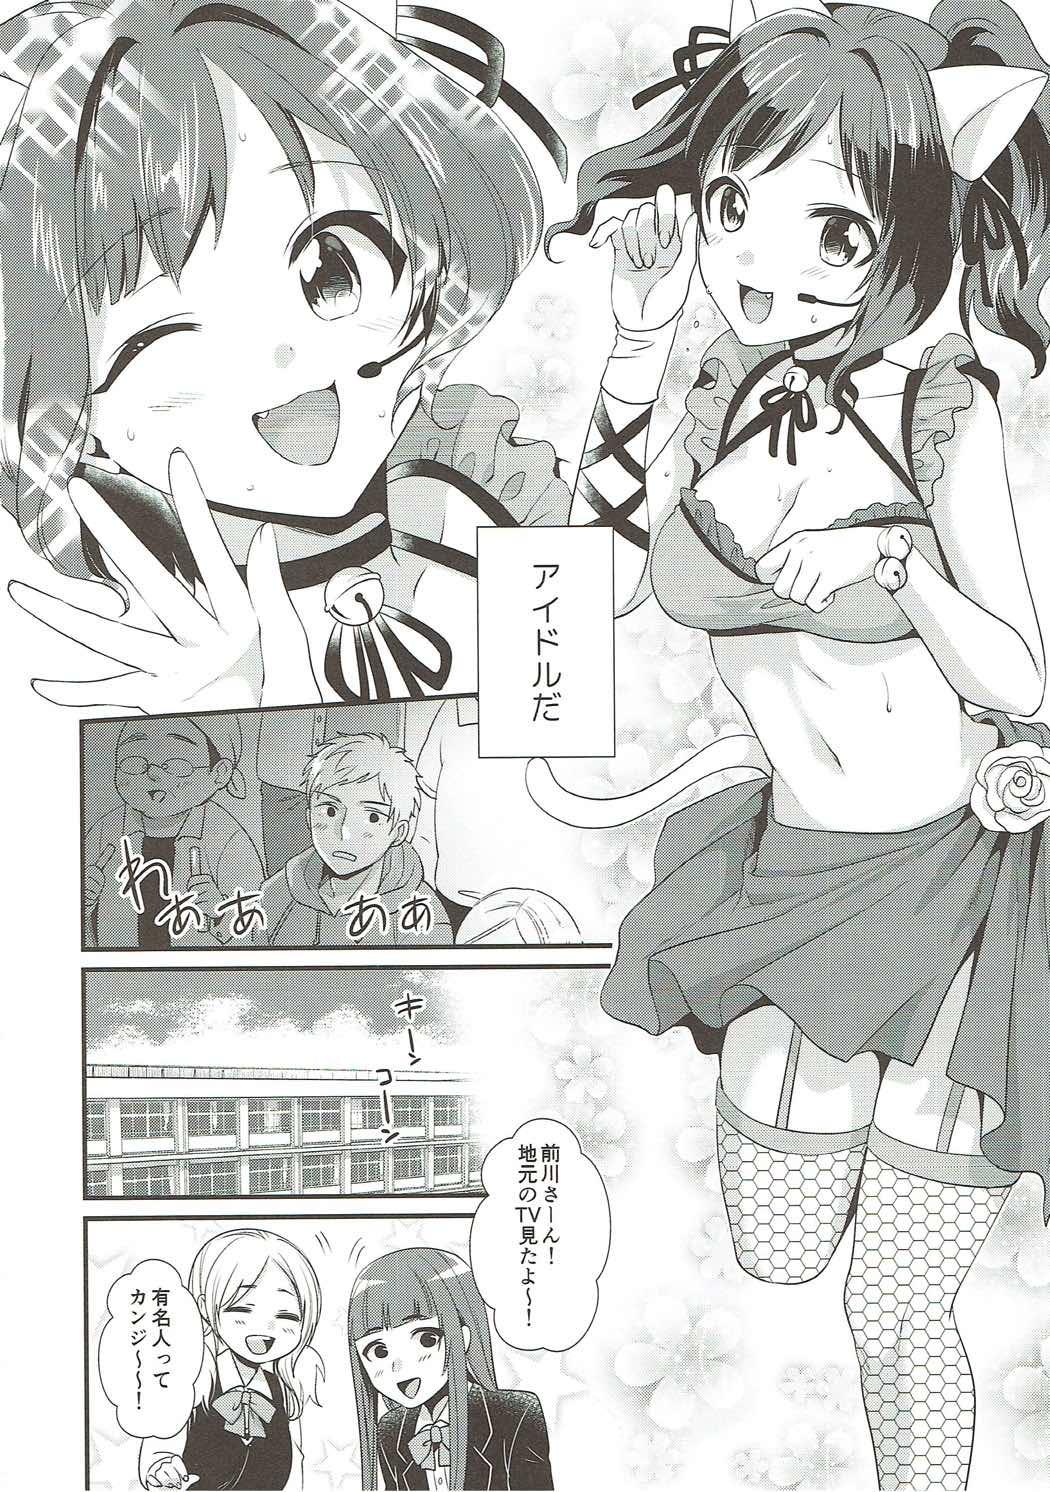 Masturbating Tonari no Seki wa Maekawa Miku - The idolmaster Actress - Page 5